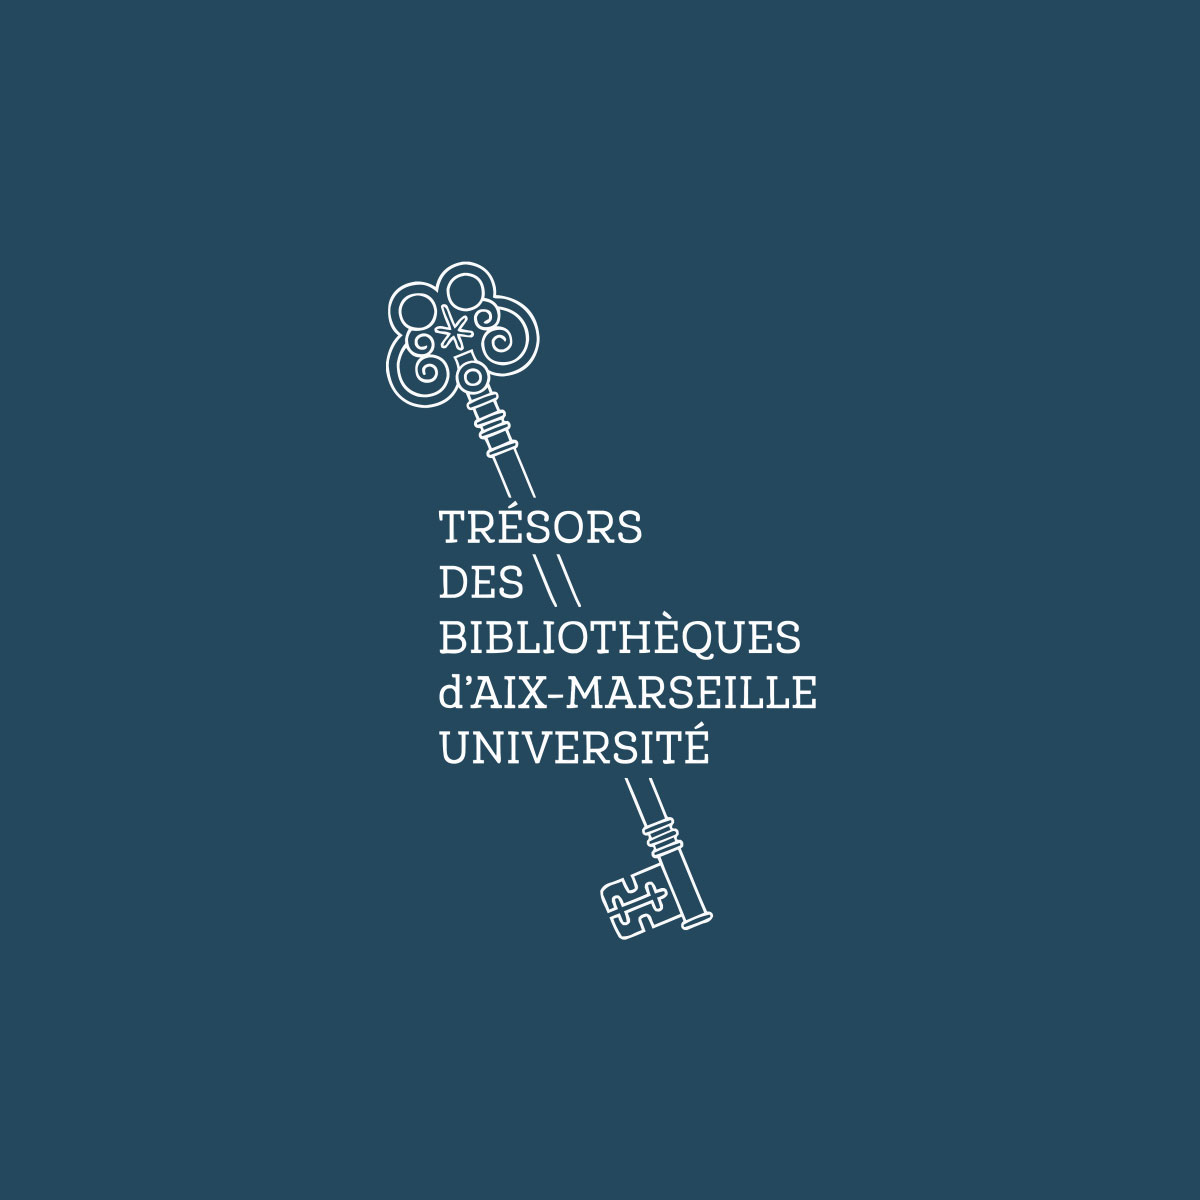 Trésors des Bibliothèques Universitaires d’Aix-Marseille flat icon